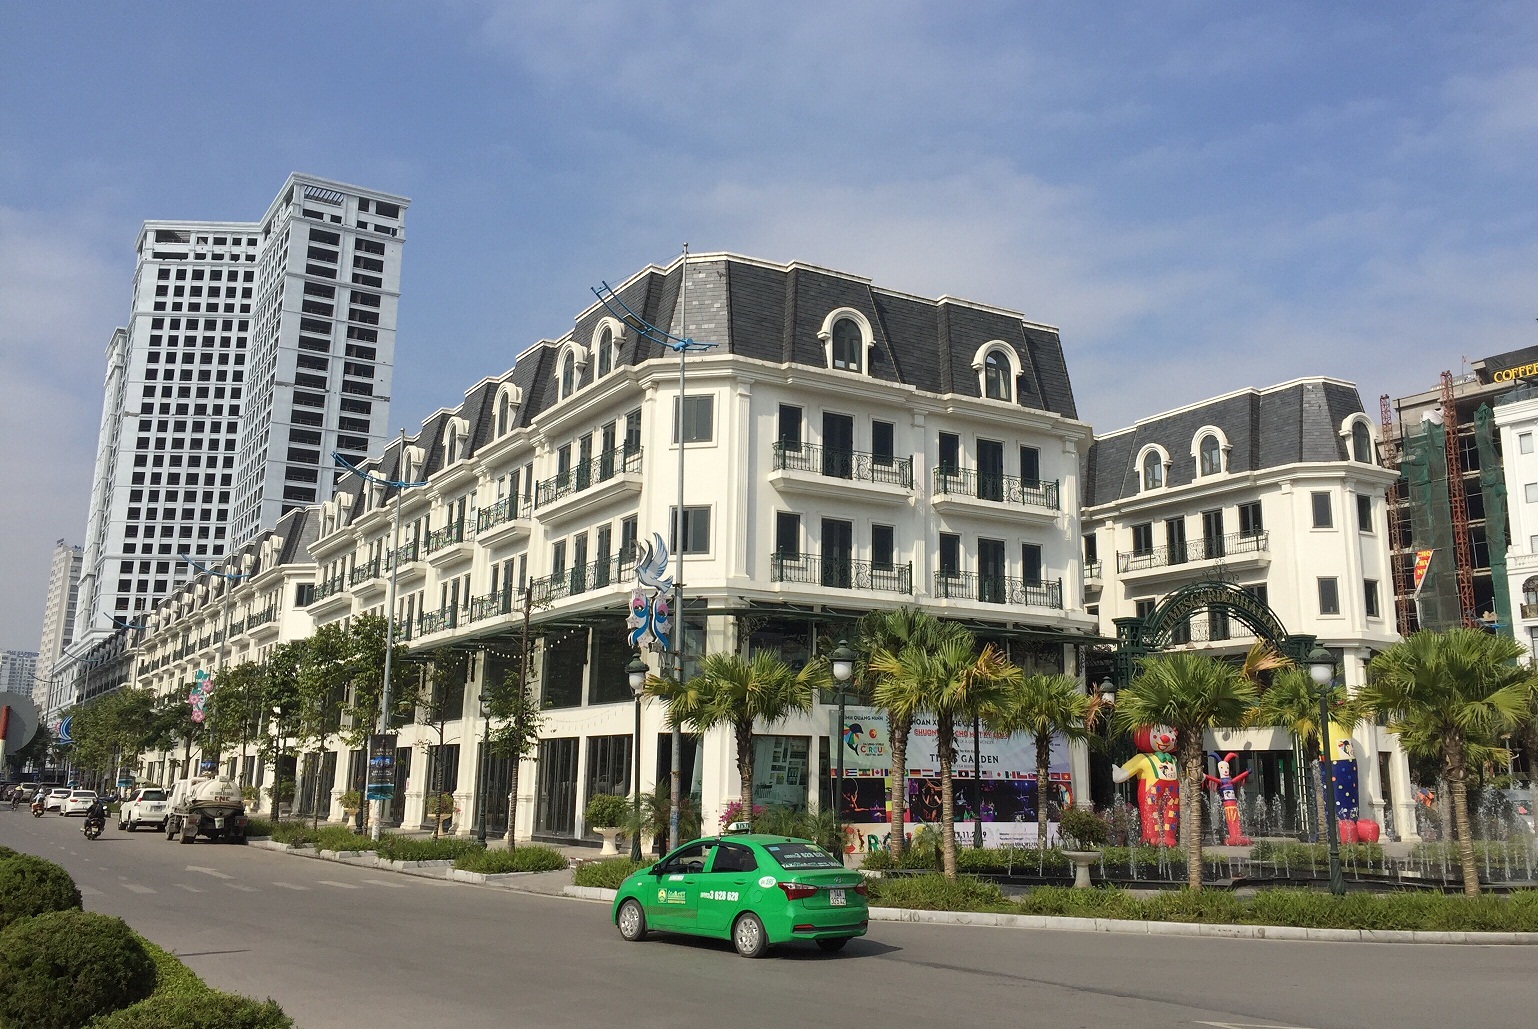  dự án Khu hỗn hợp chung cư, văn phòng, trung tâm thương mại và nhà ở kết hợp mua sắm tại phường Bạch Đằng